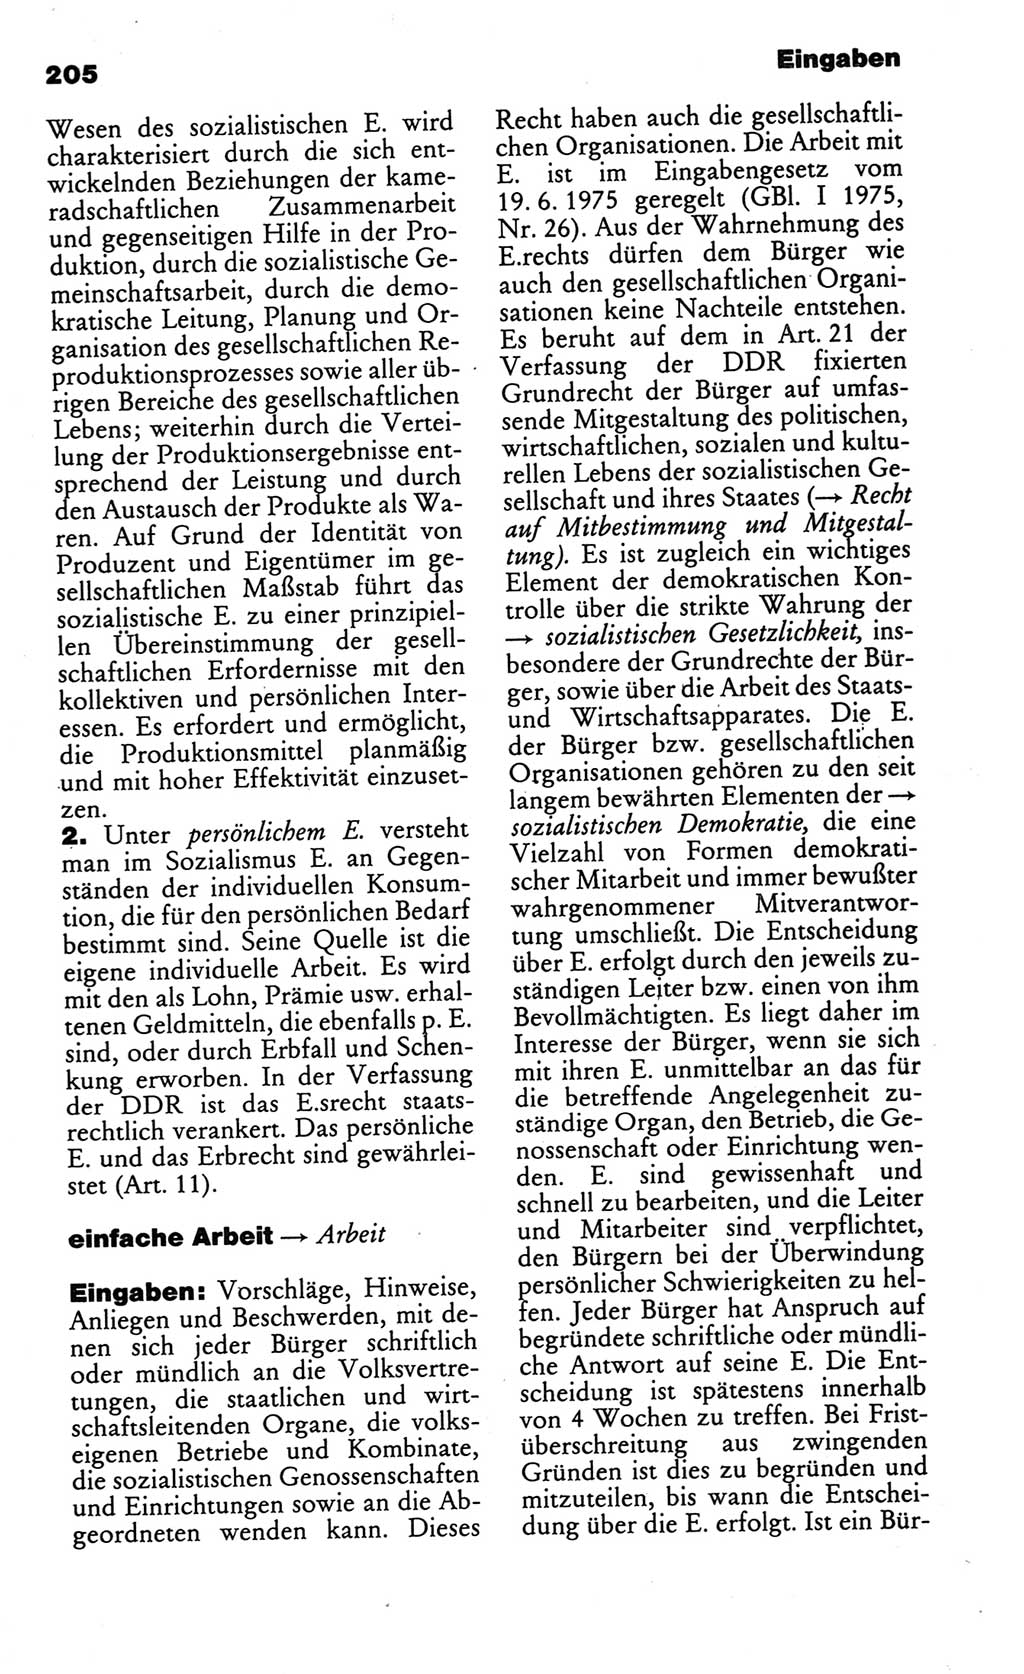 Kleines politisches Wörterbuch [Deutsche Demokratische Republik (DDR)] 1986, Seite 205 (Kl. pol. Wb. DDR 1986, S. 205)